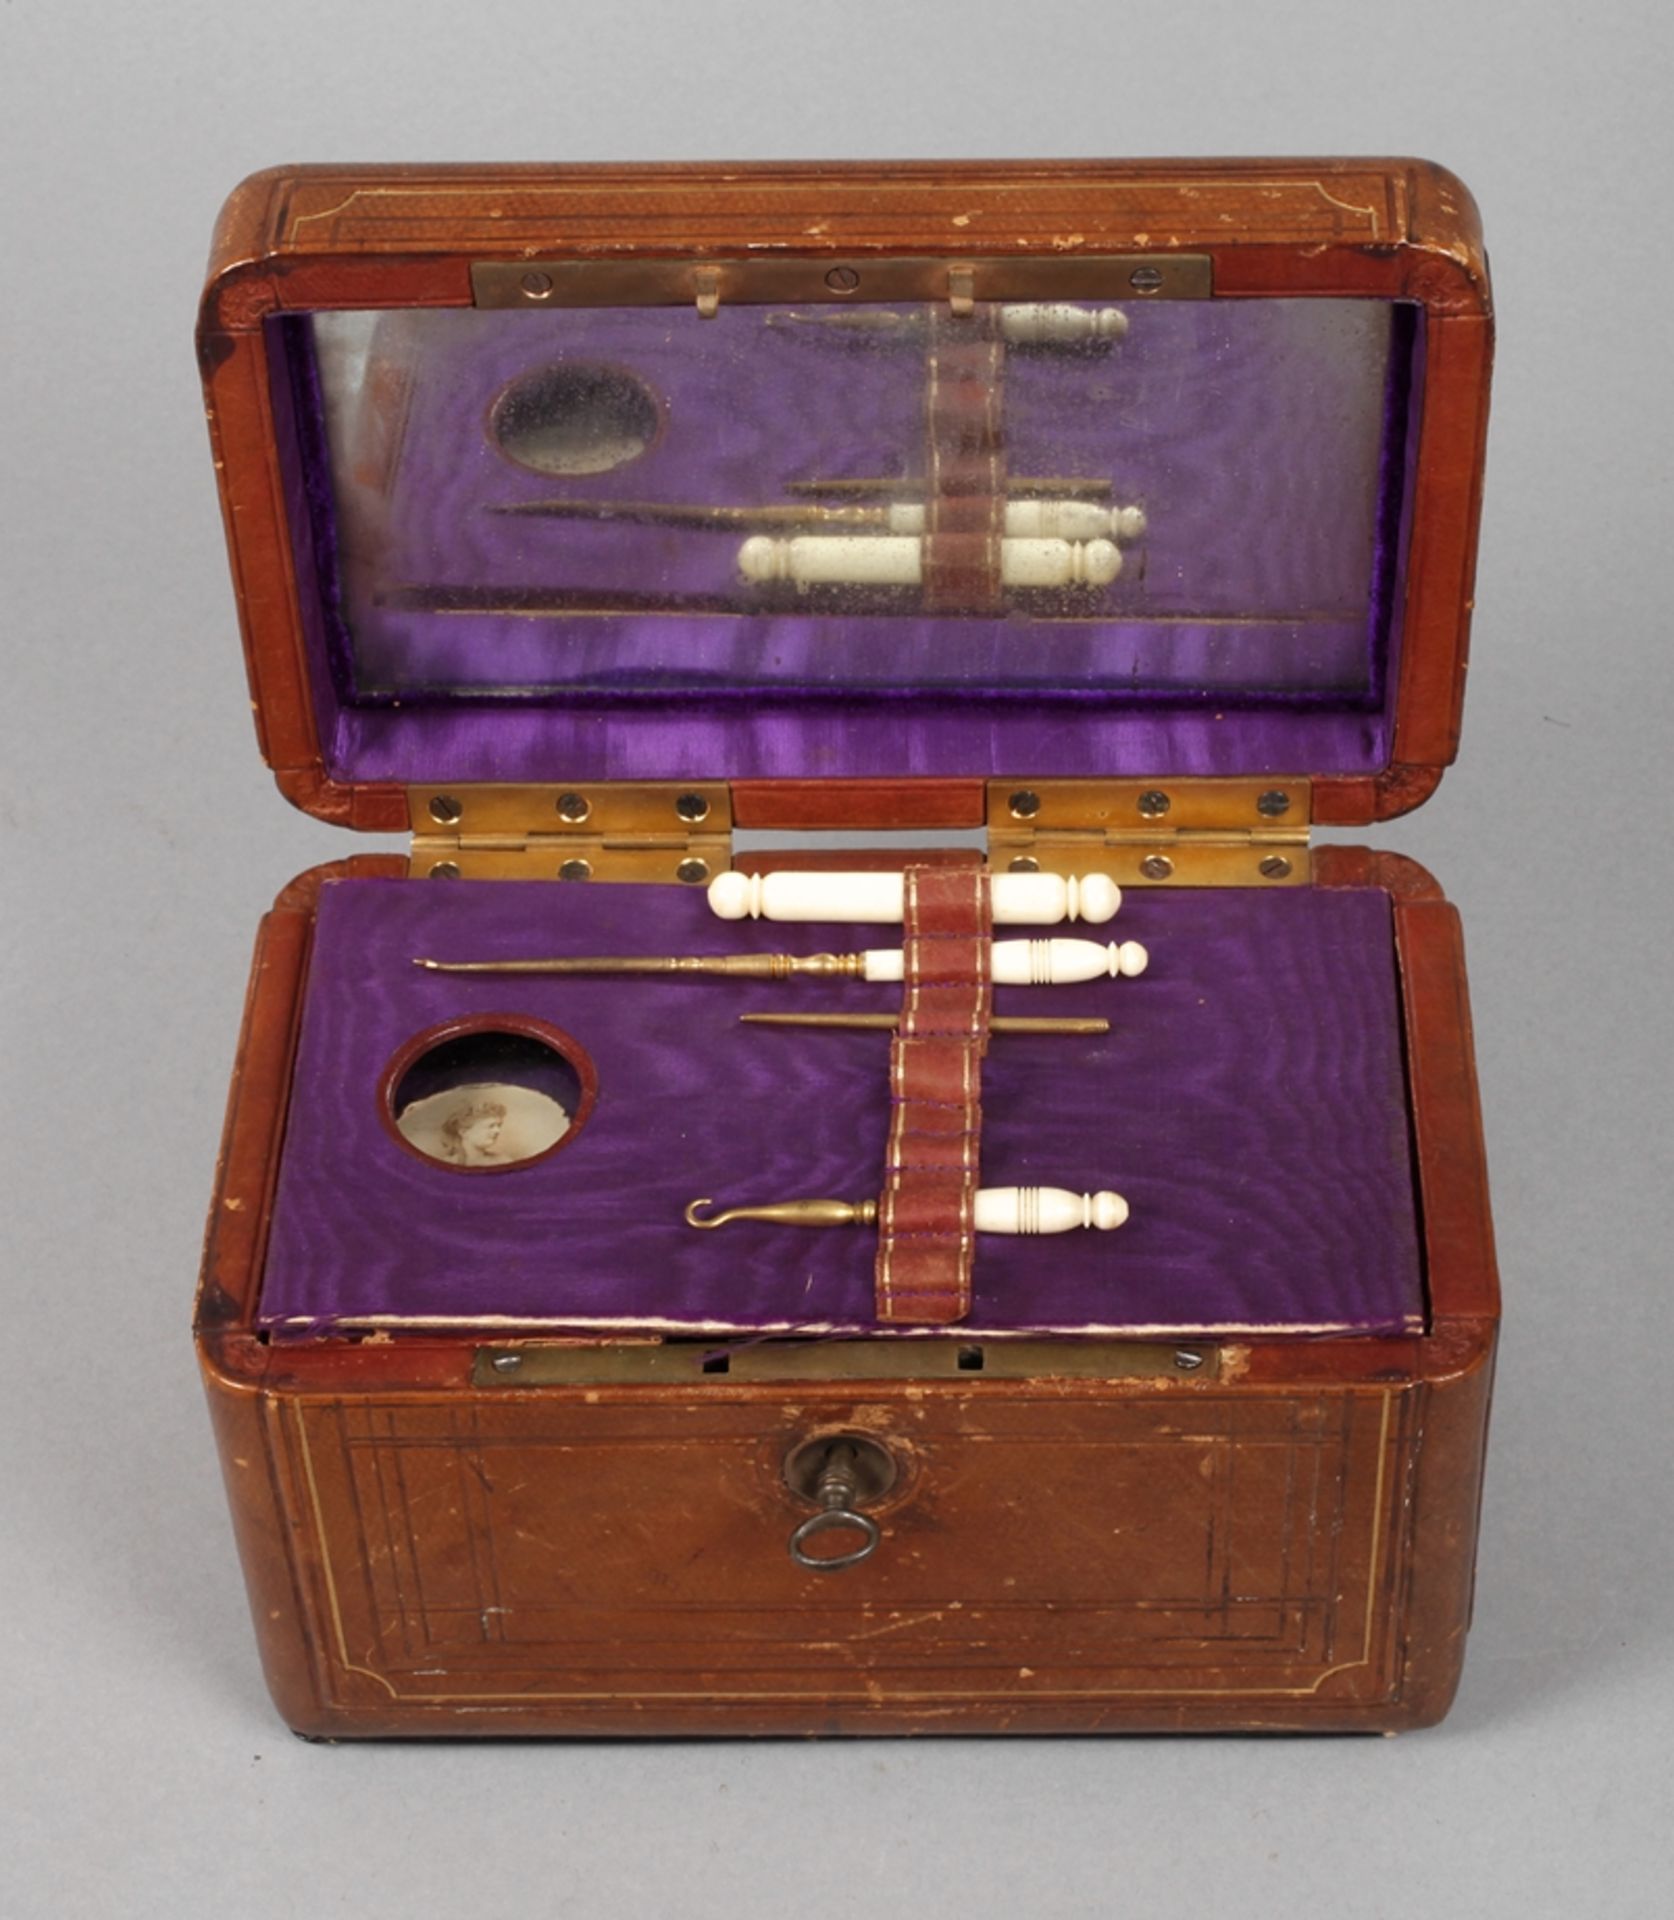 Necessaire mit Spieluhrum 1890, ungemarkt, langrechteckiger, goldgeprägter lederbezogener Korpus,